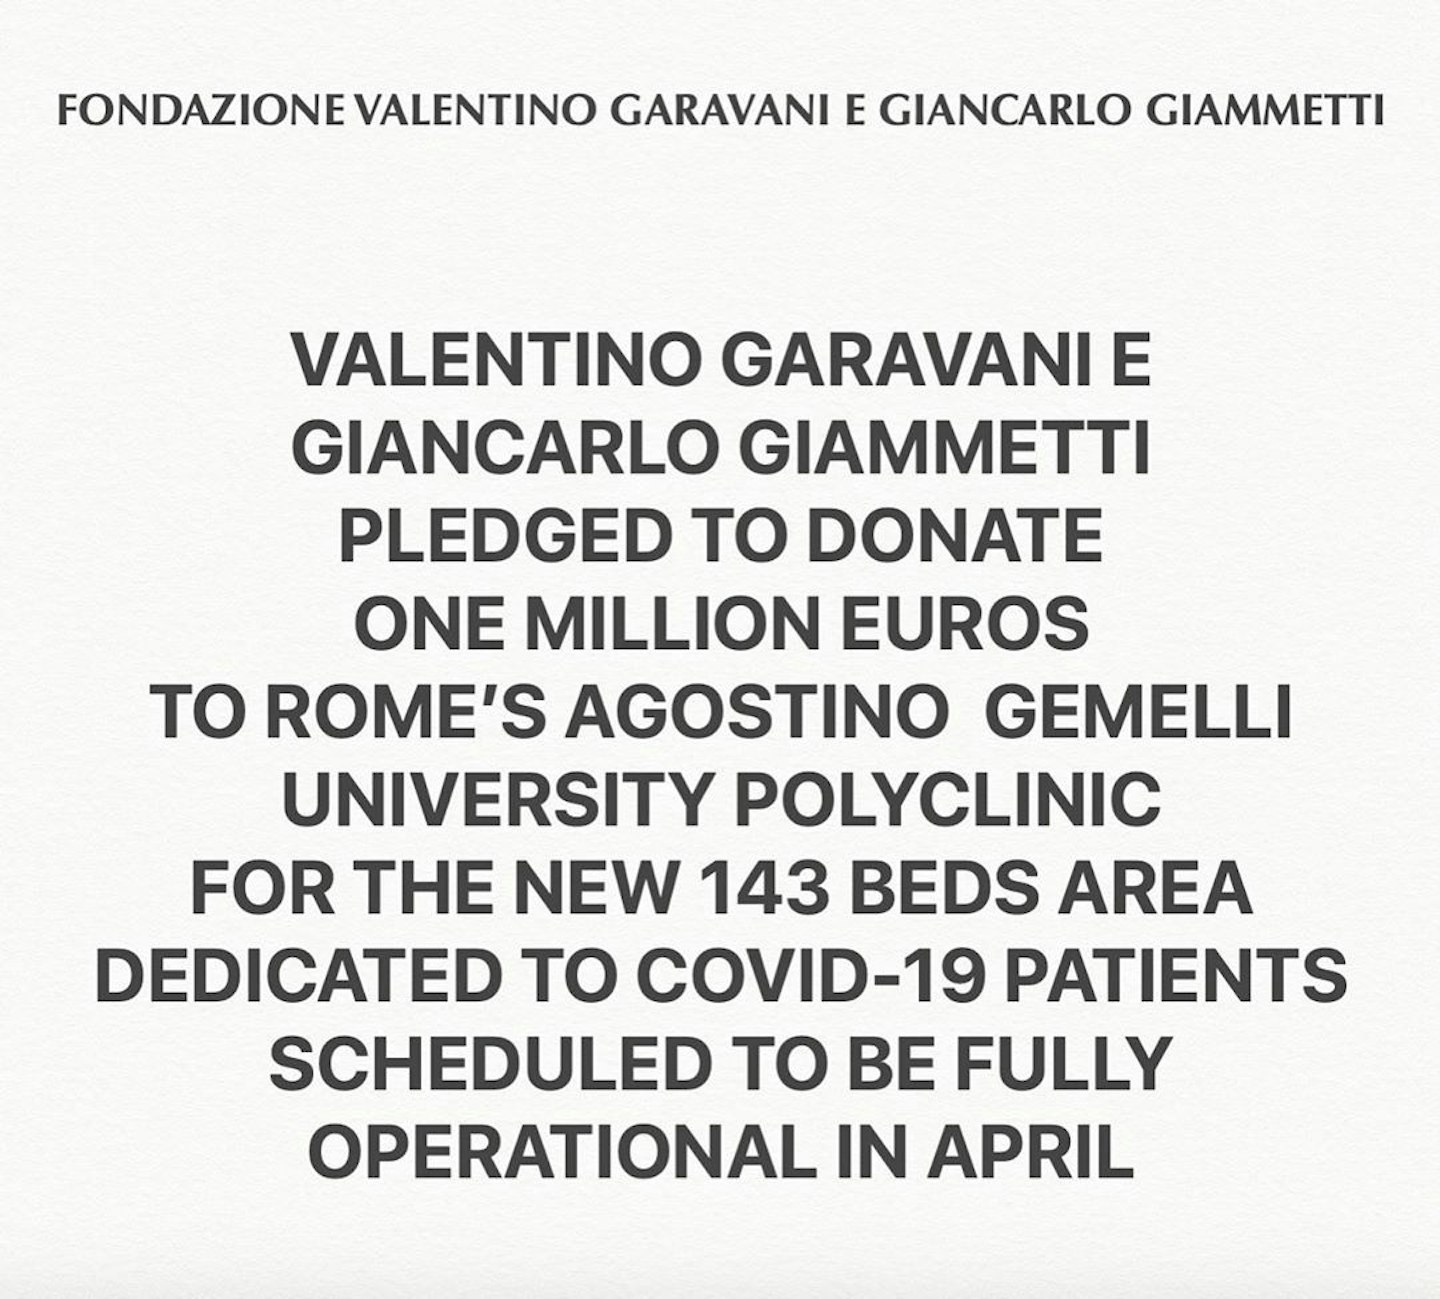 Valentino-garavani-giancarlo-giammetti-coronavirus-aid